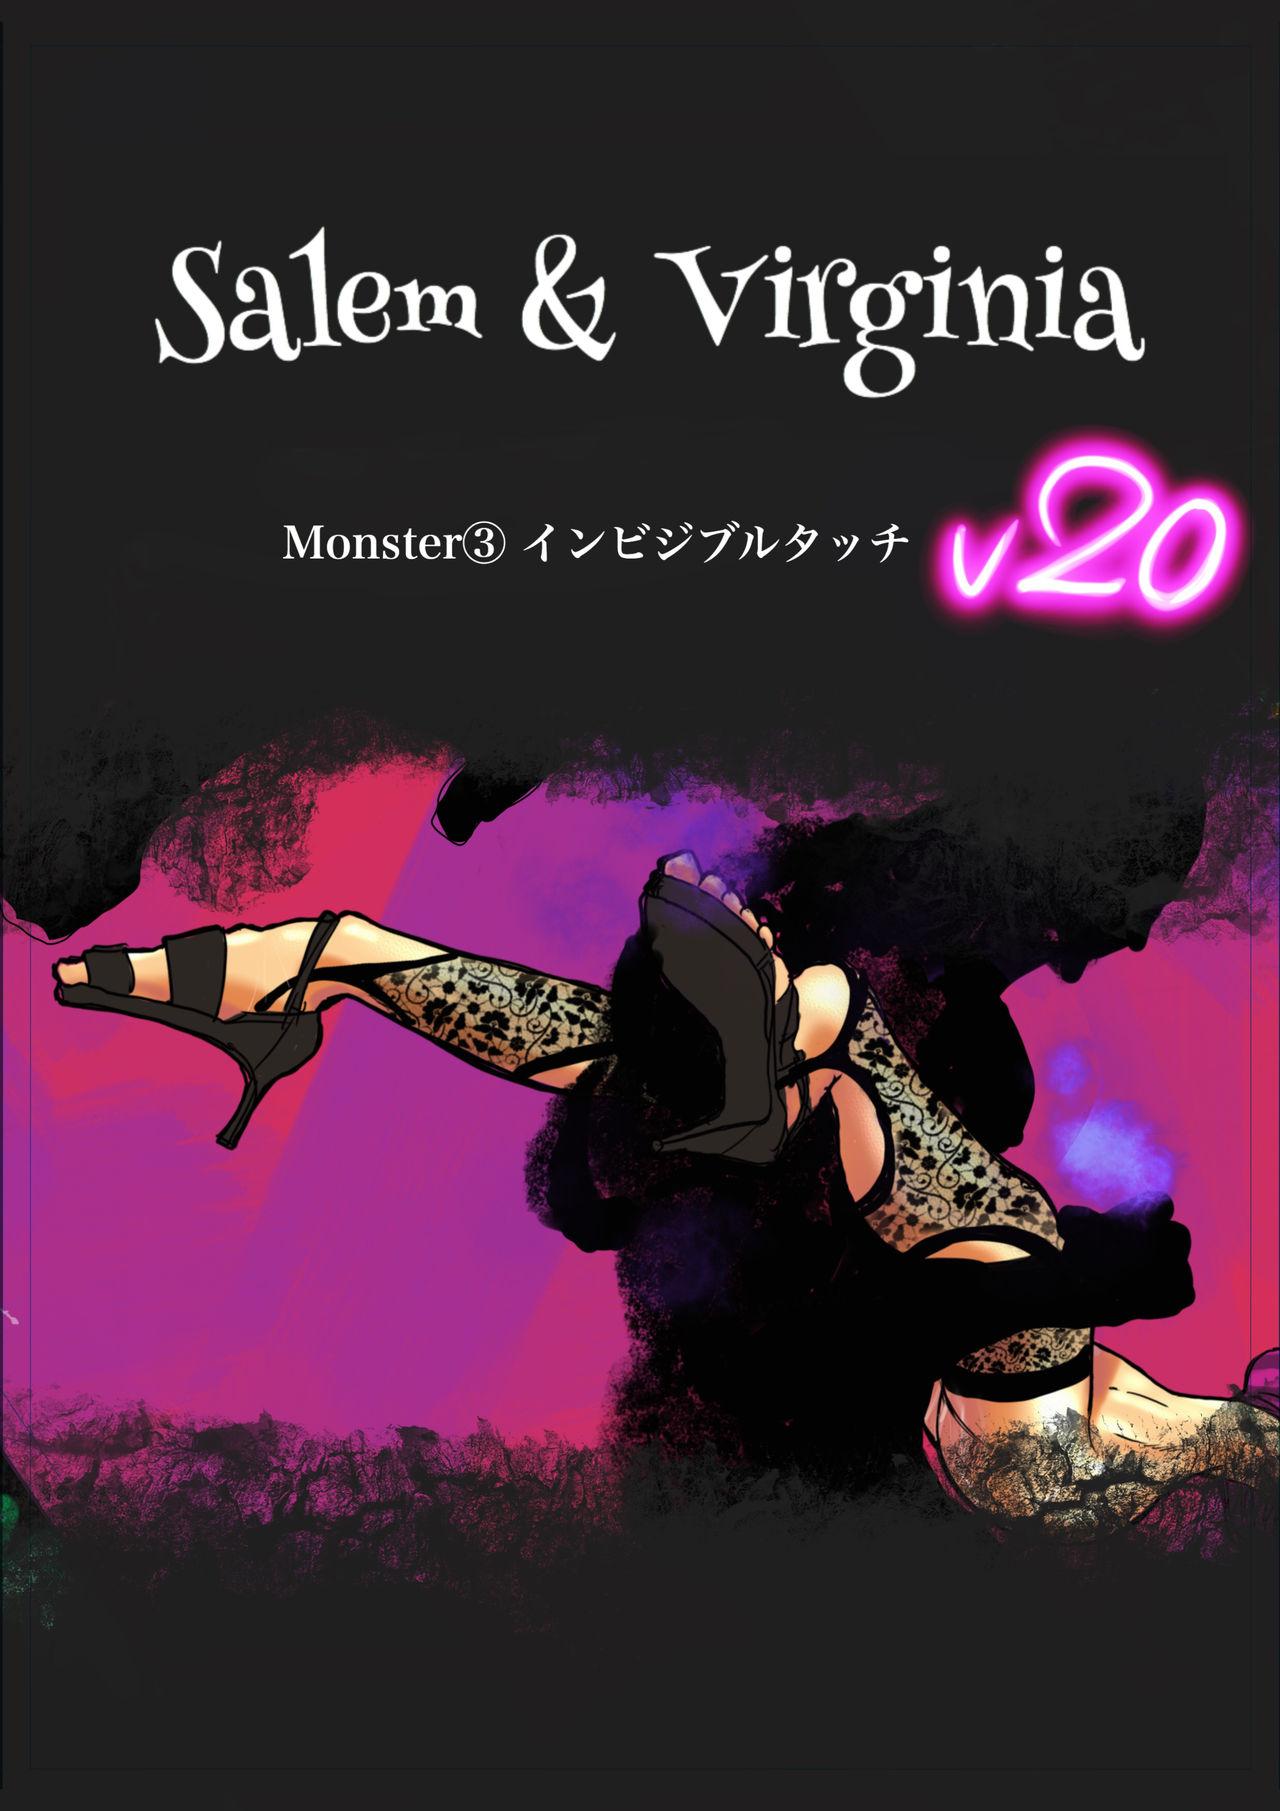 Salem & Virginia 80